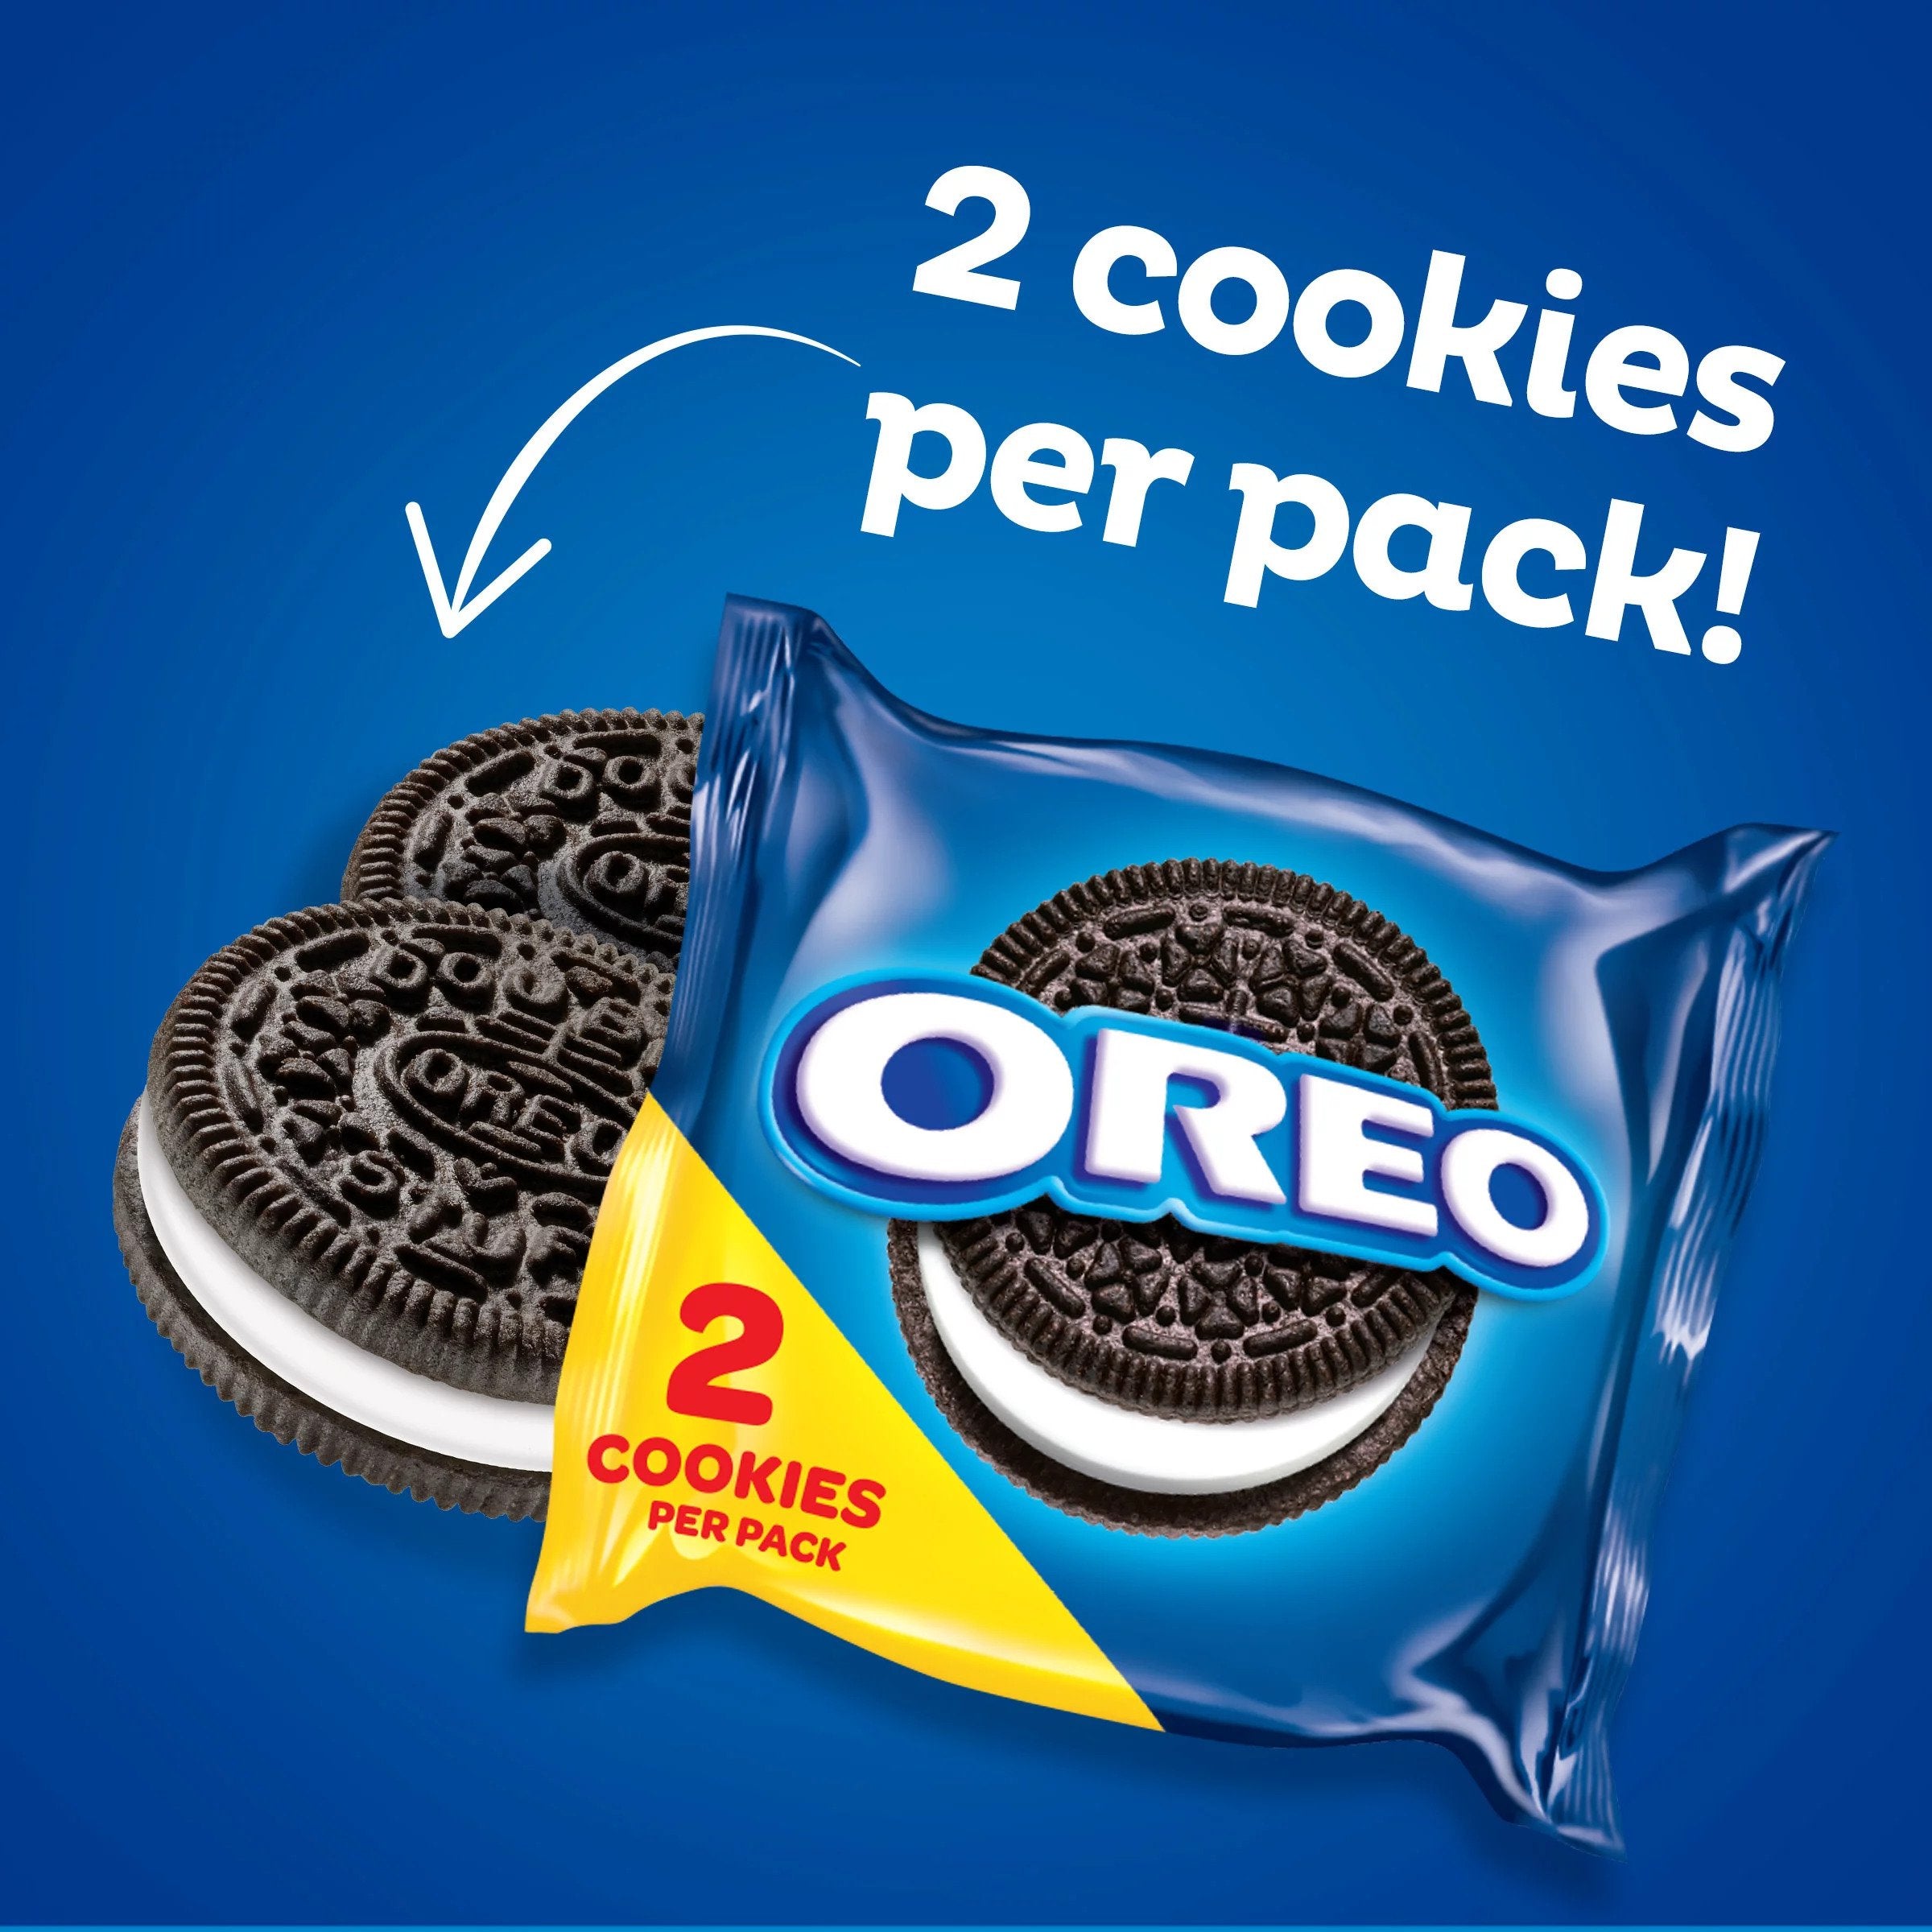 Oreo 1 pack of 2 cookies - 22g